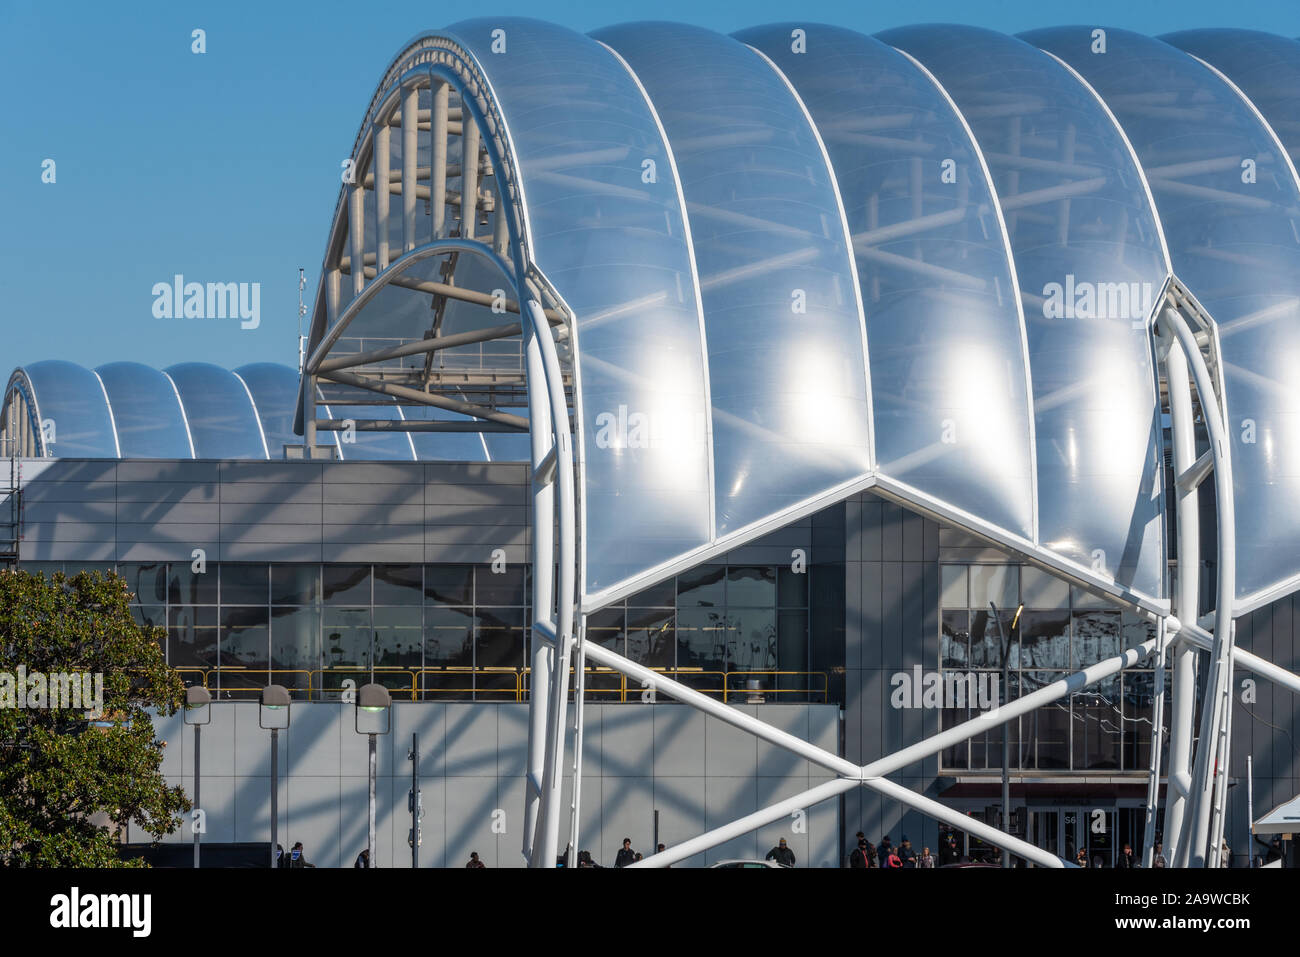 Gerollt - Edelstahl Vordächer mit durchsichtigen ETFE-Panels an Zentralen Hartsfield-Jackson Atlanta International Airport Terminal Komplex. (USA) Stockfoto